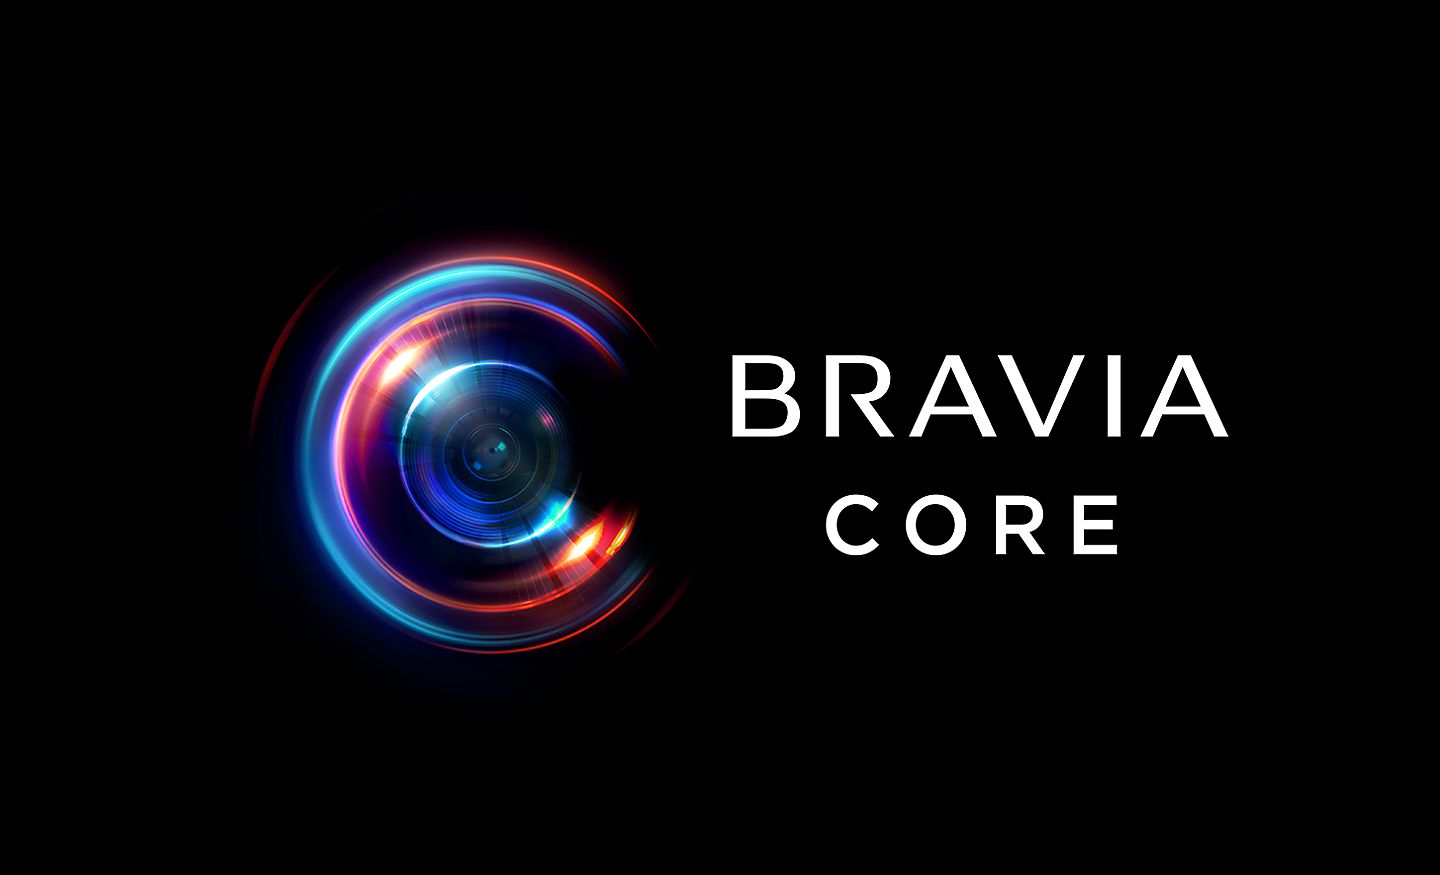 لقطة شاشة تعرض شعار BRAVIA CORE